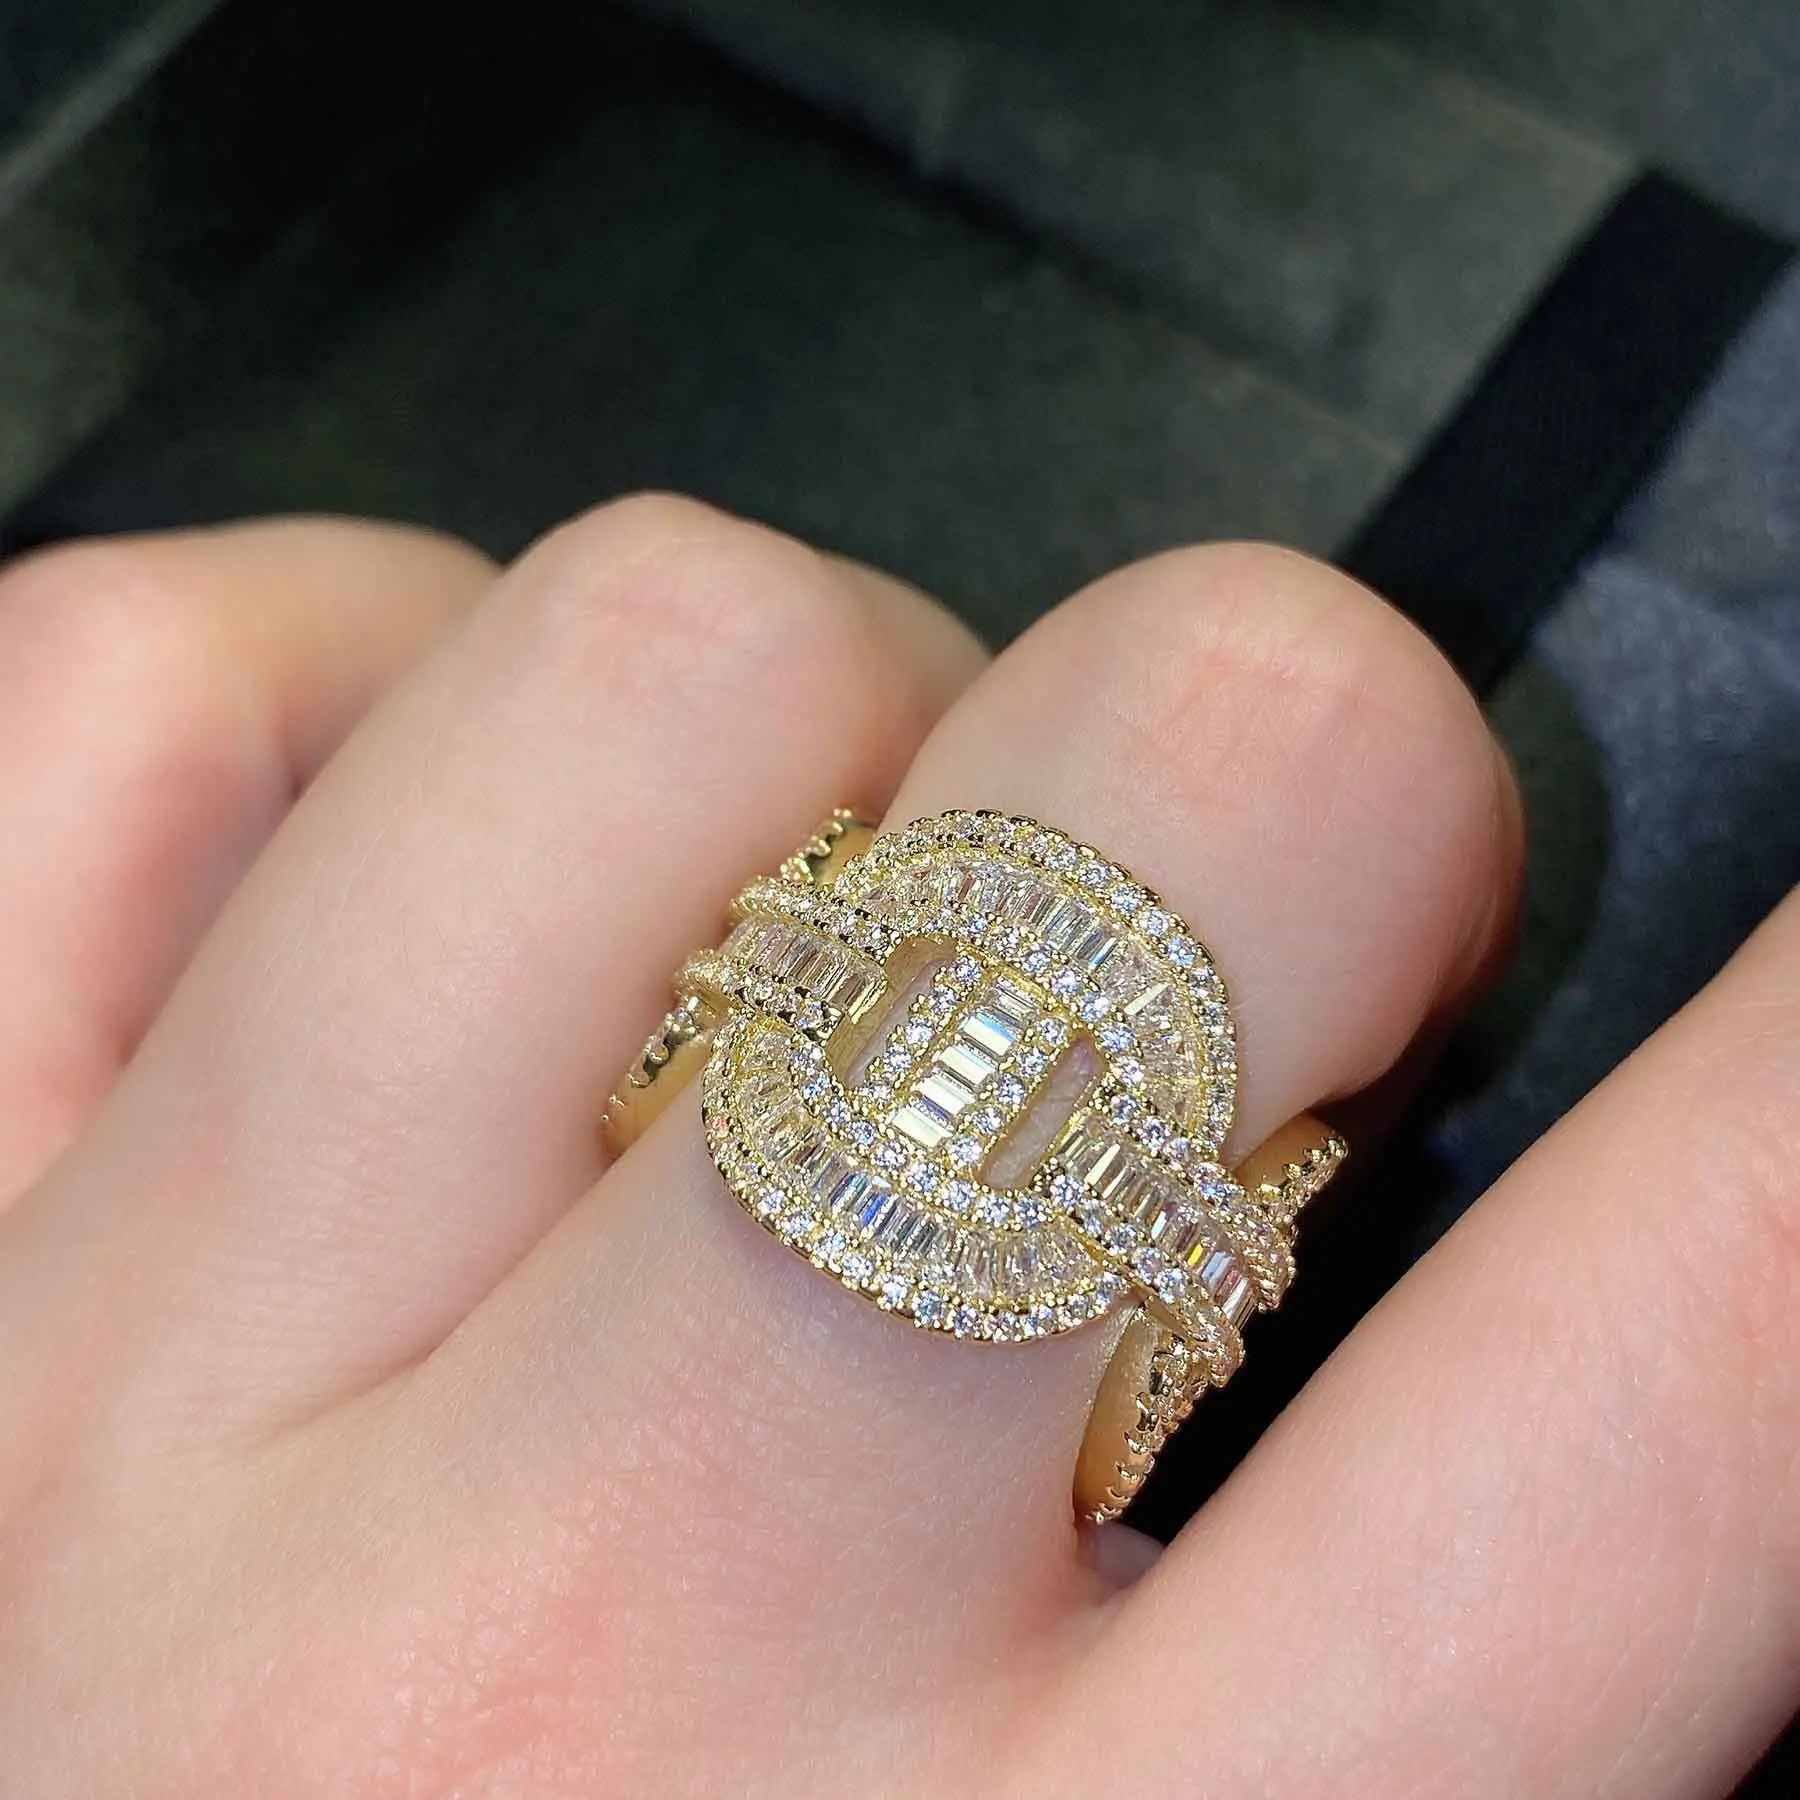 

Оригинальный Роскошный 14k Золотое кольцо с бриллиантом для женщин Фирменное ювелирное изделие, подарок в стиле хип-хоп/рок-кольца модные аксессуары Anillos Mujer